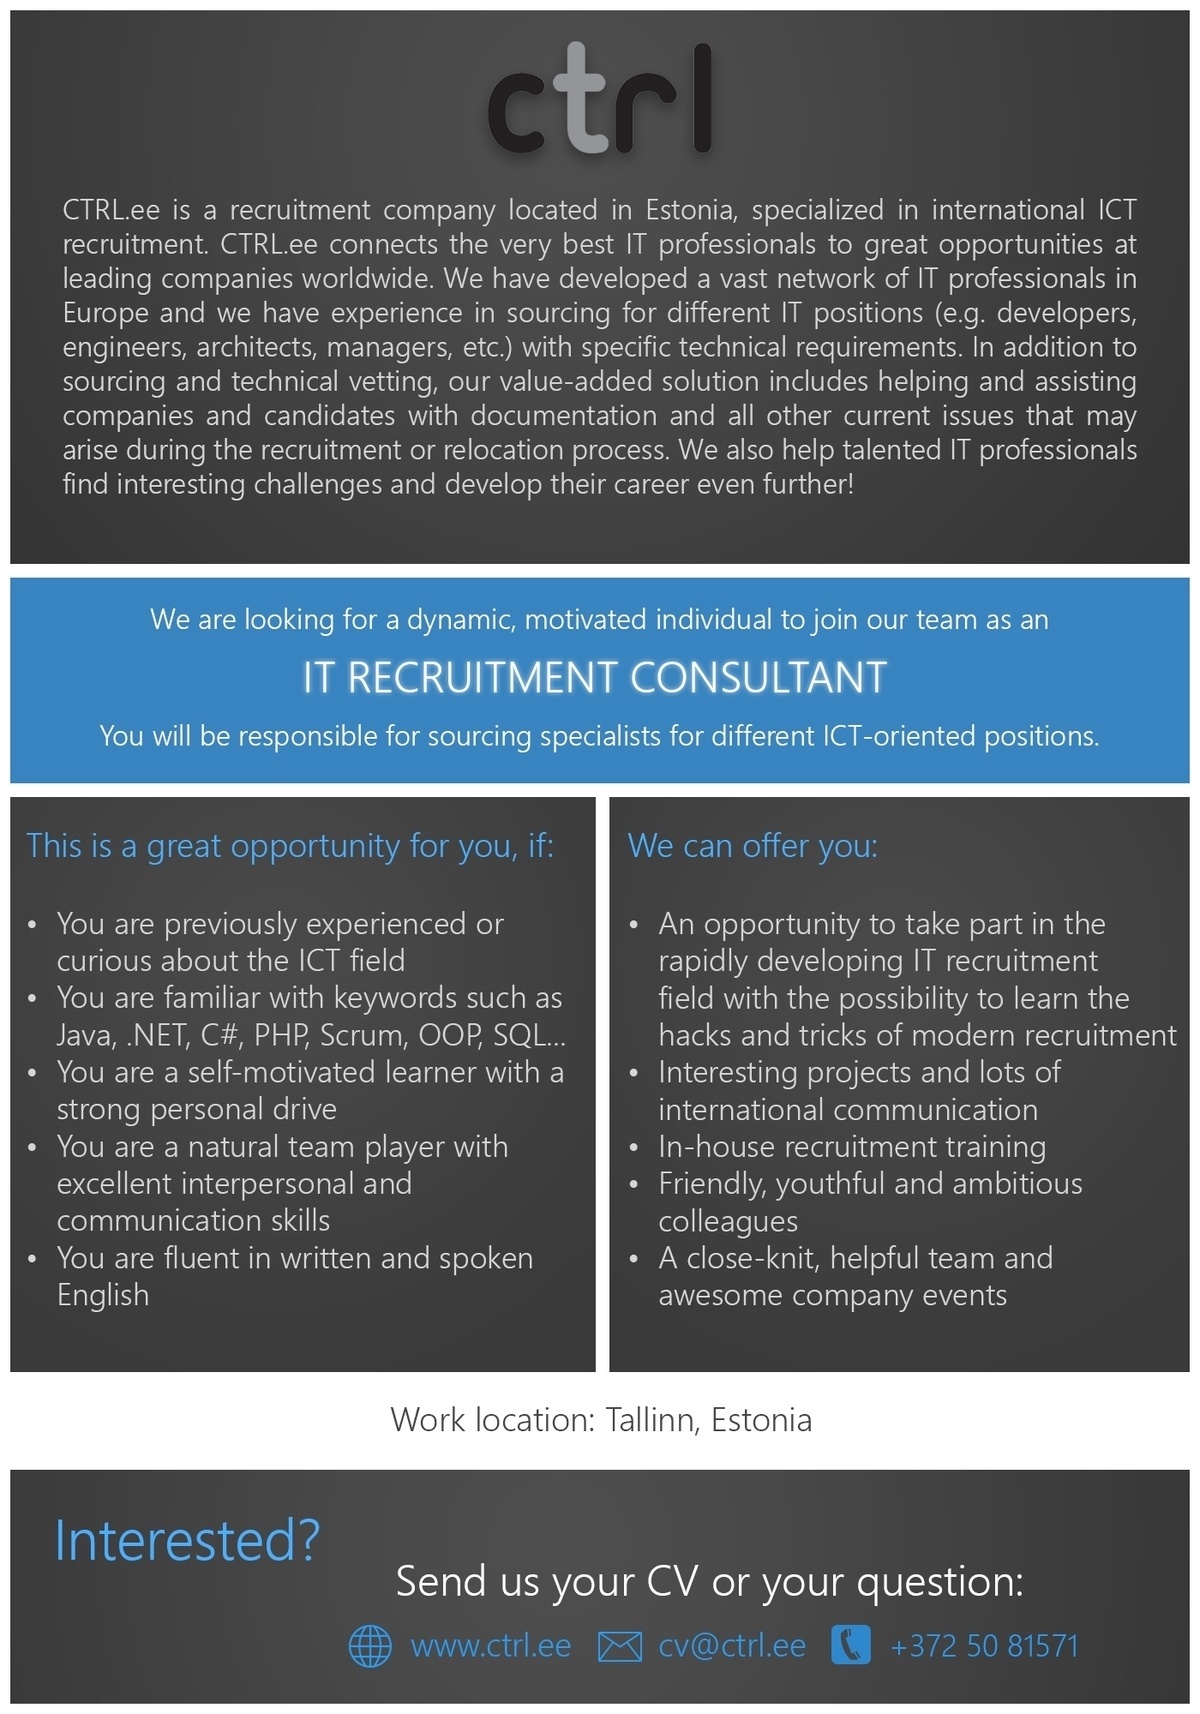 CTRL (HR Power OÜ) IT recruitment consultant